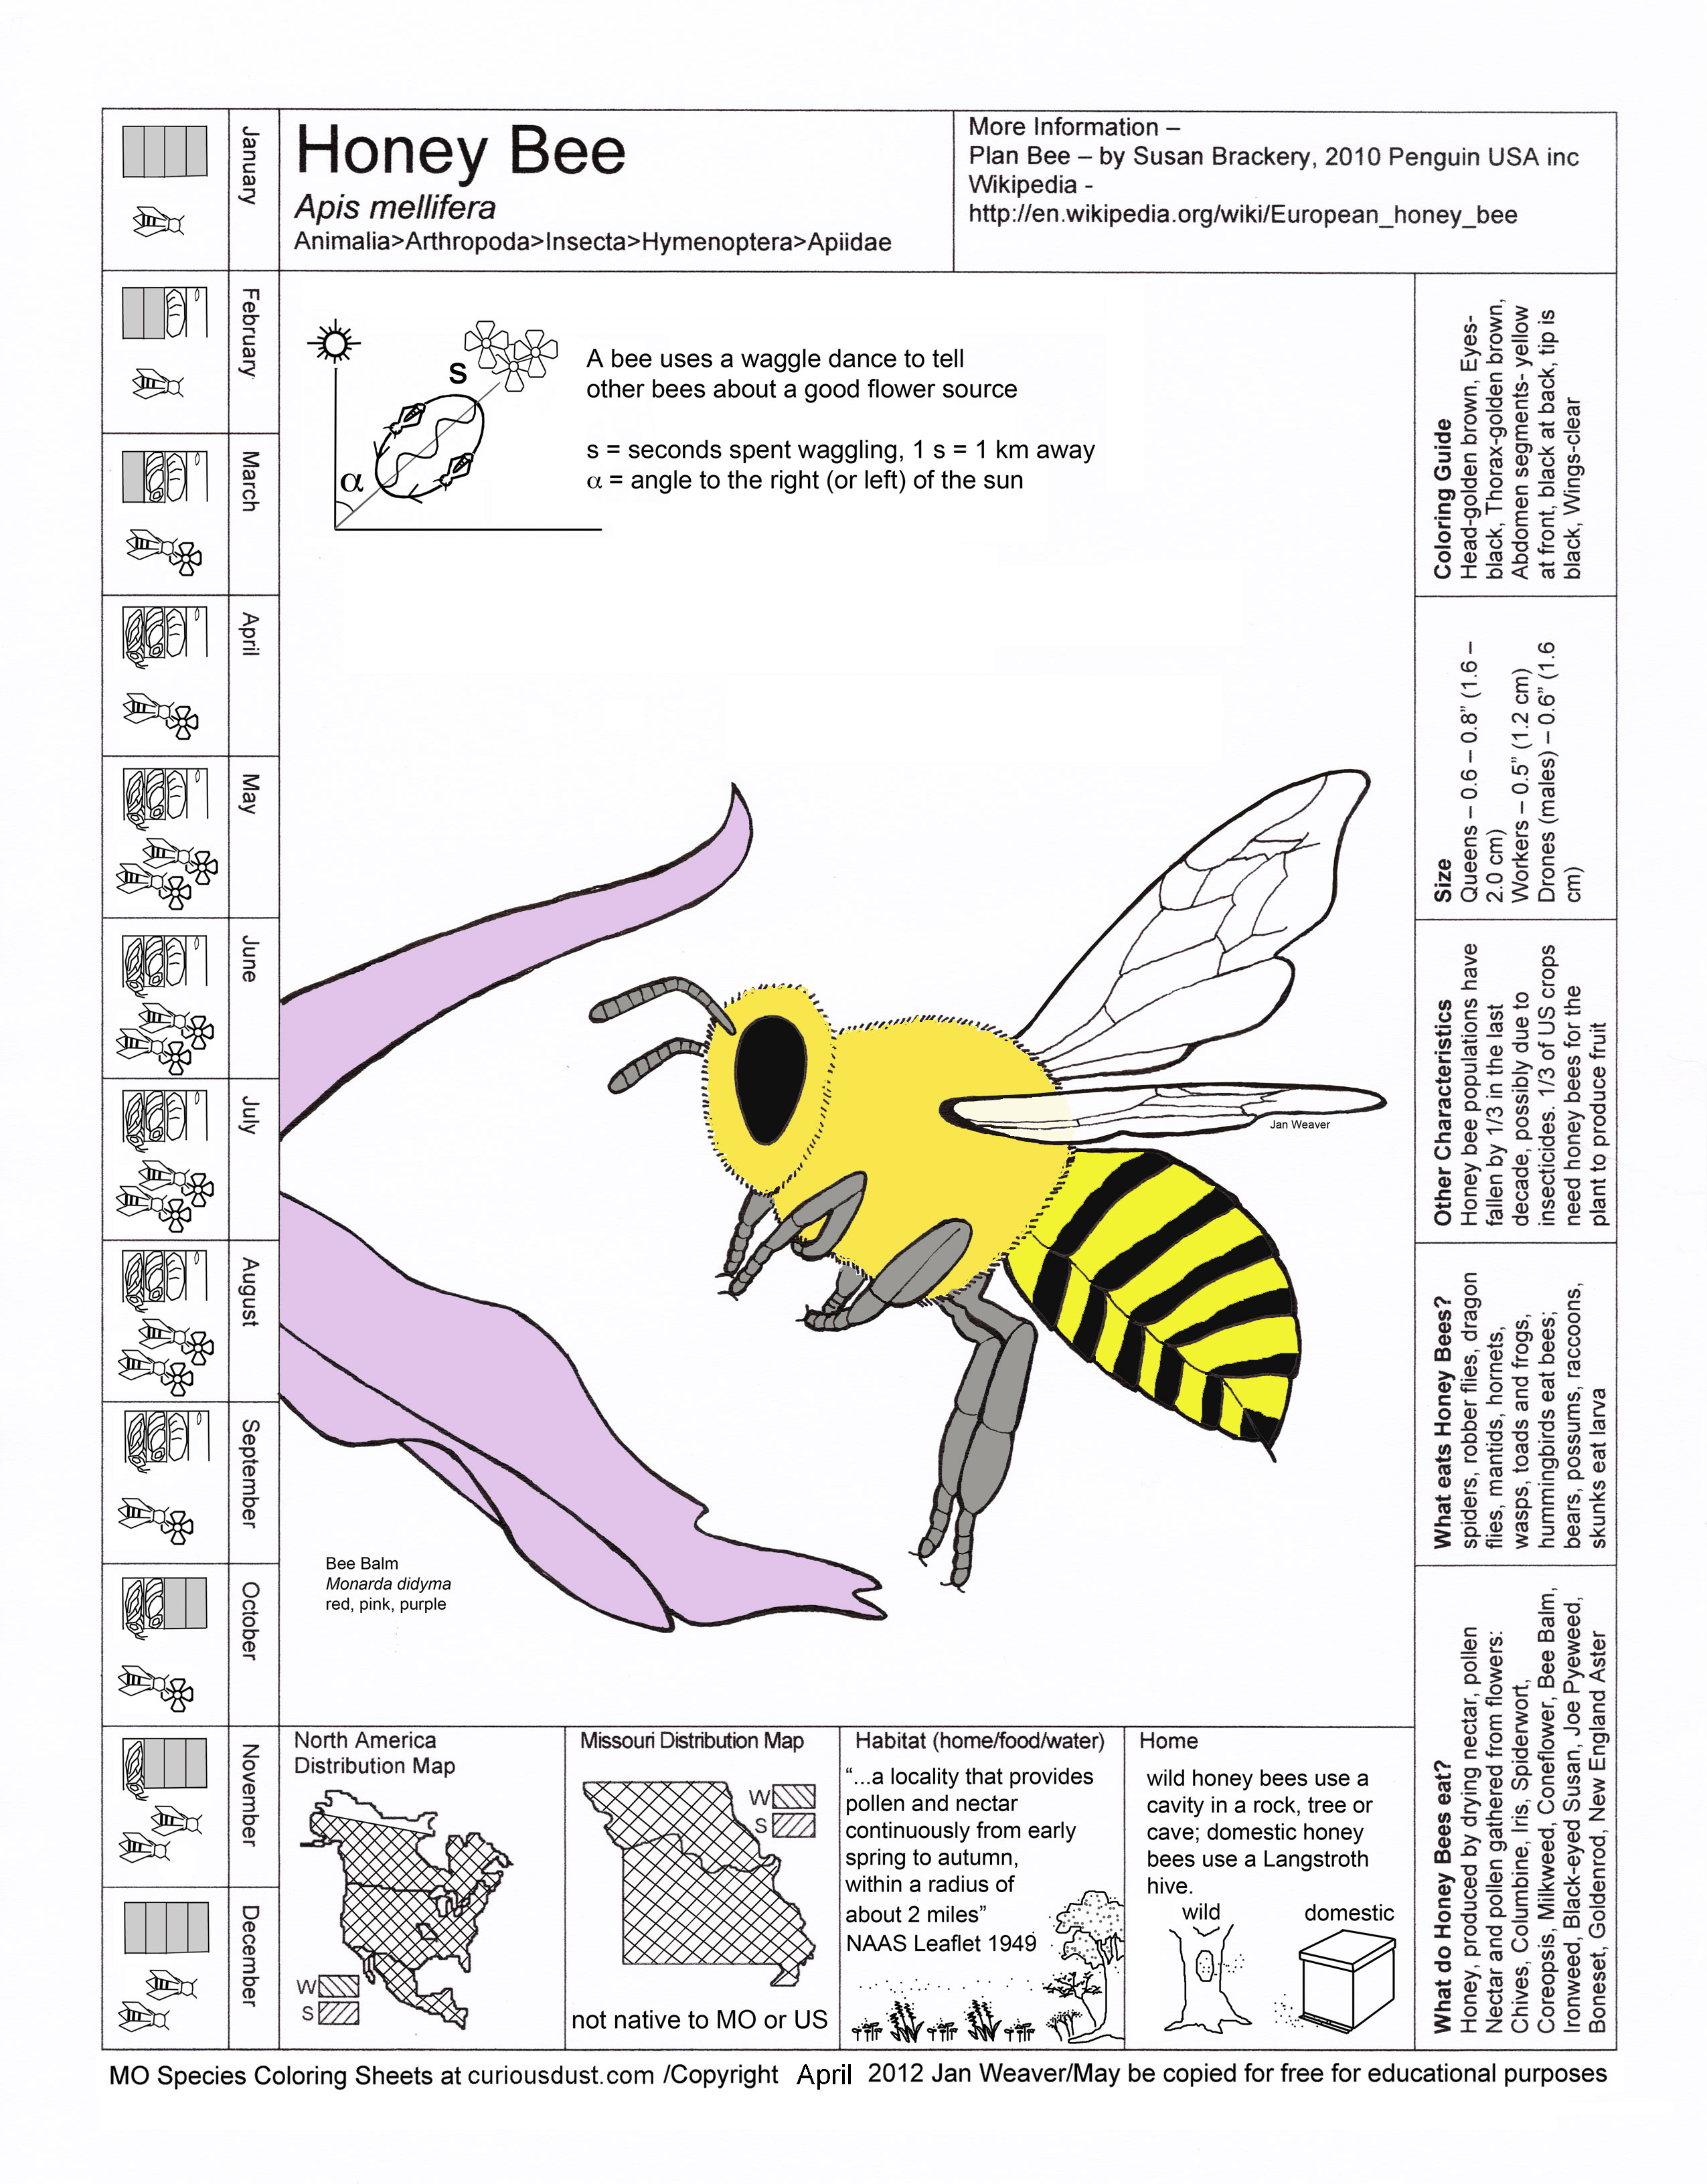 Honeybee Image